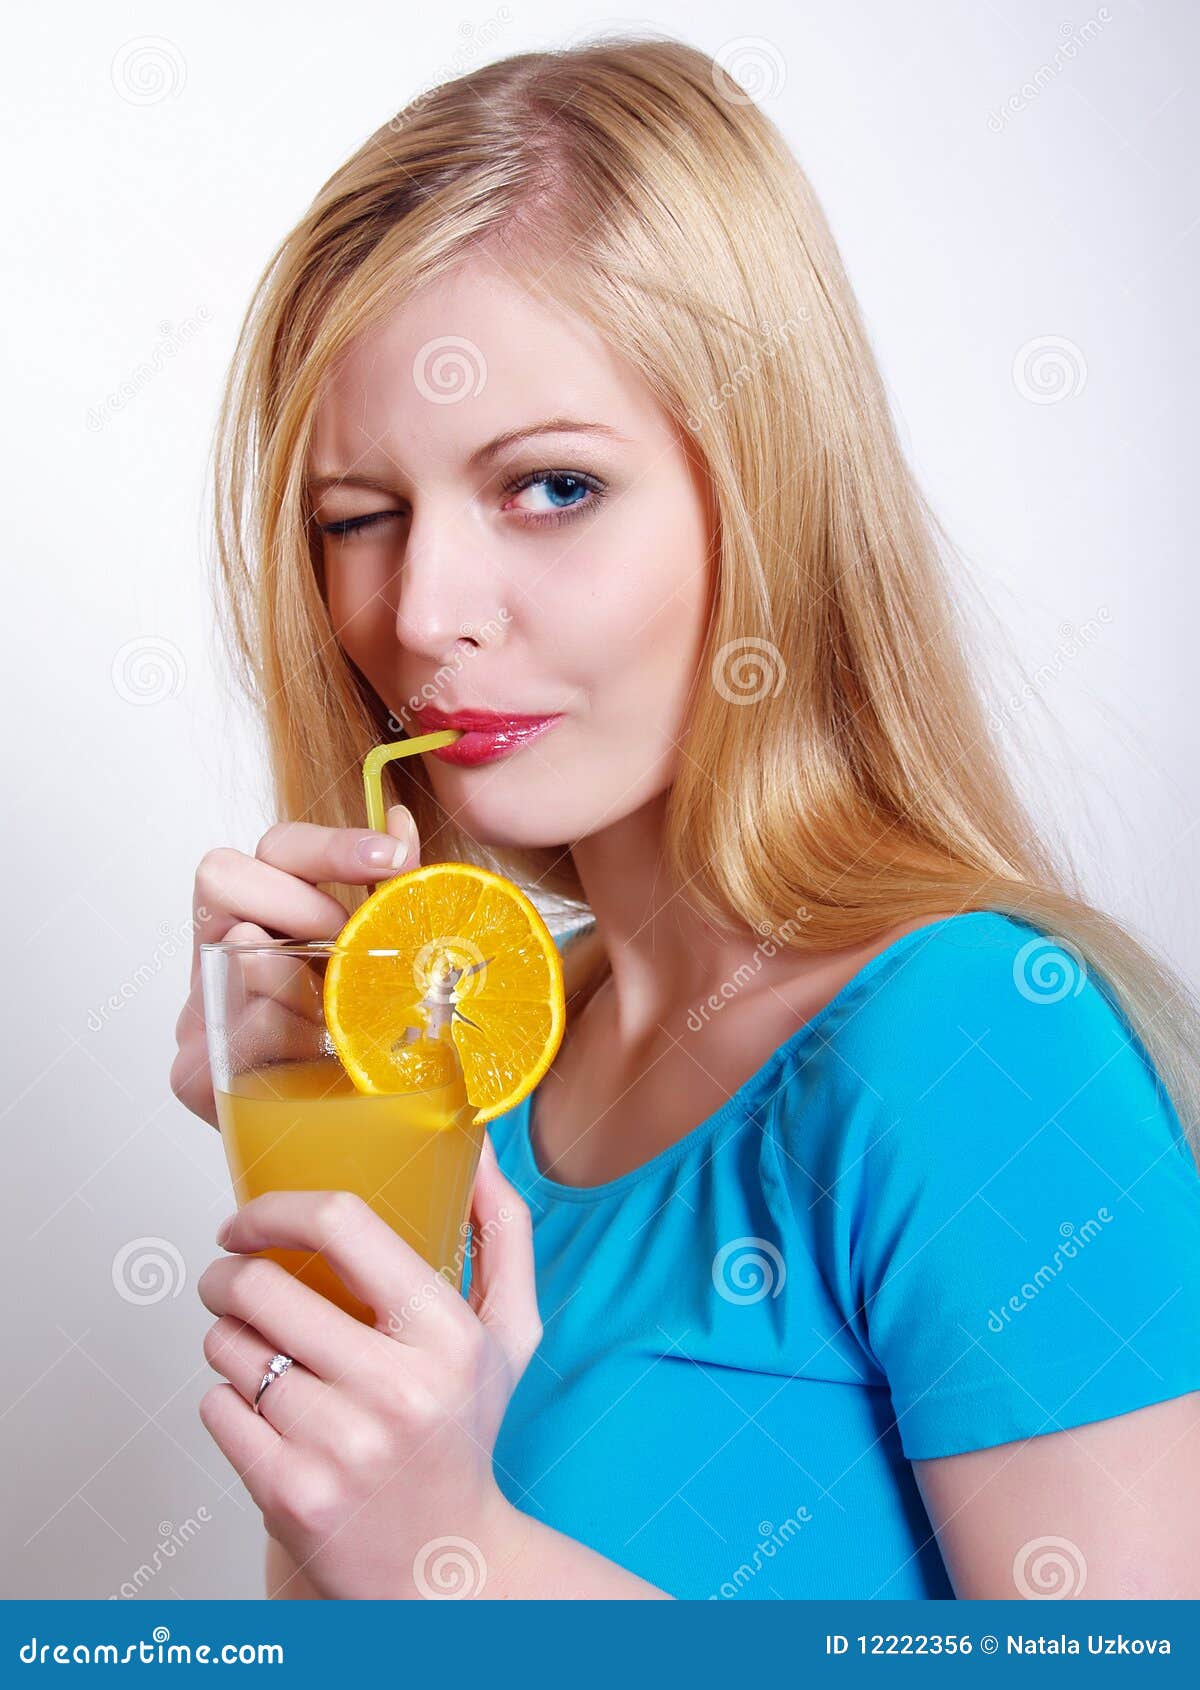 Пить сок через трубочку. Красивая девушка пьет сок. Человек пьет из трубочки. Девушка пьет из трубочки. Человек пьет сок через трубочку.